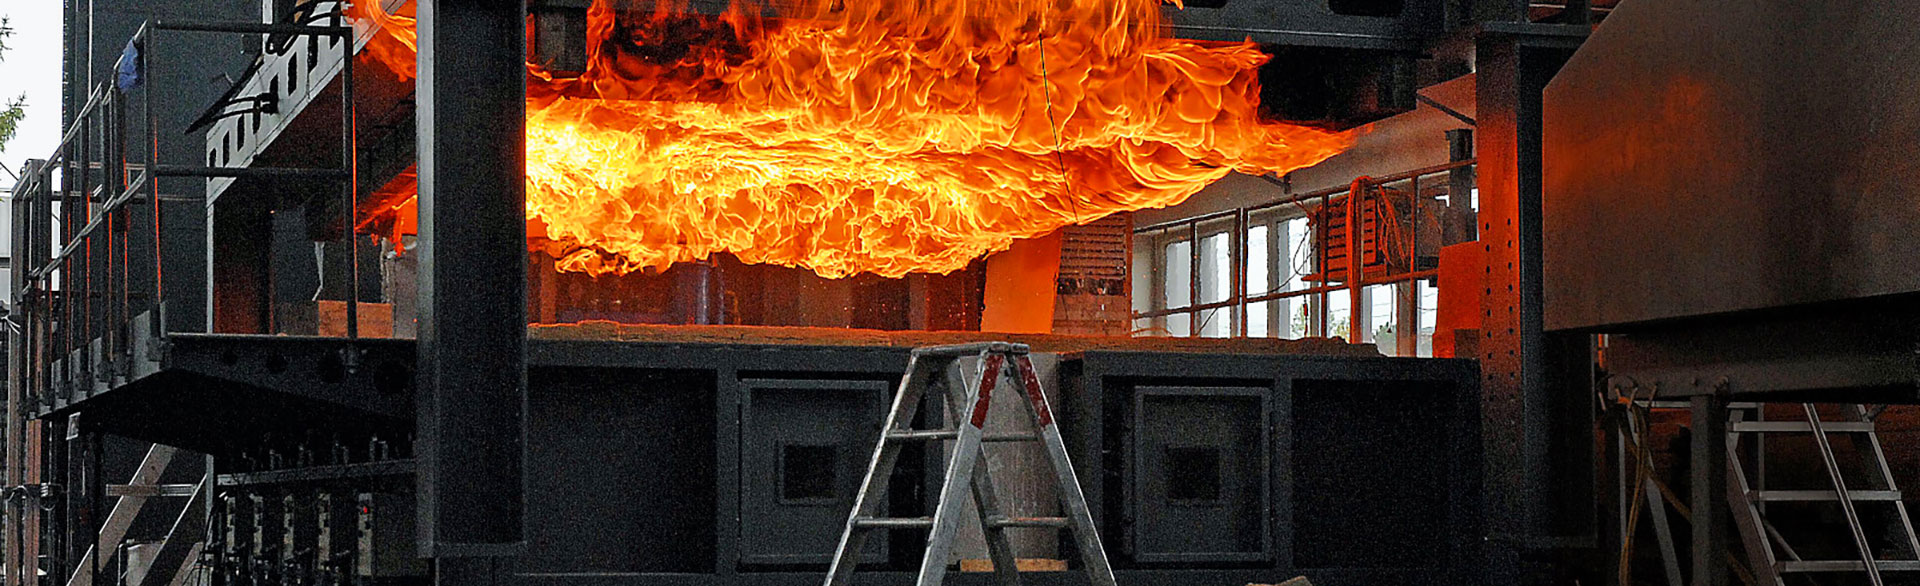 CEN/TS 1187 Çatılarda Harici Yangına Maruz Kalma İçin Test Yöntemleri